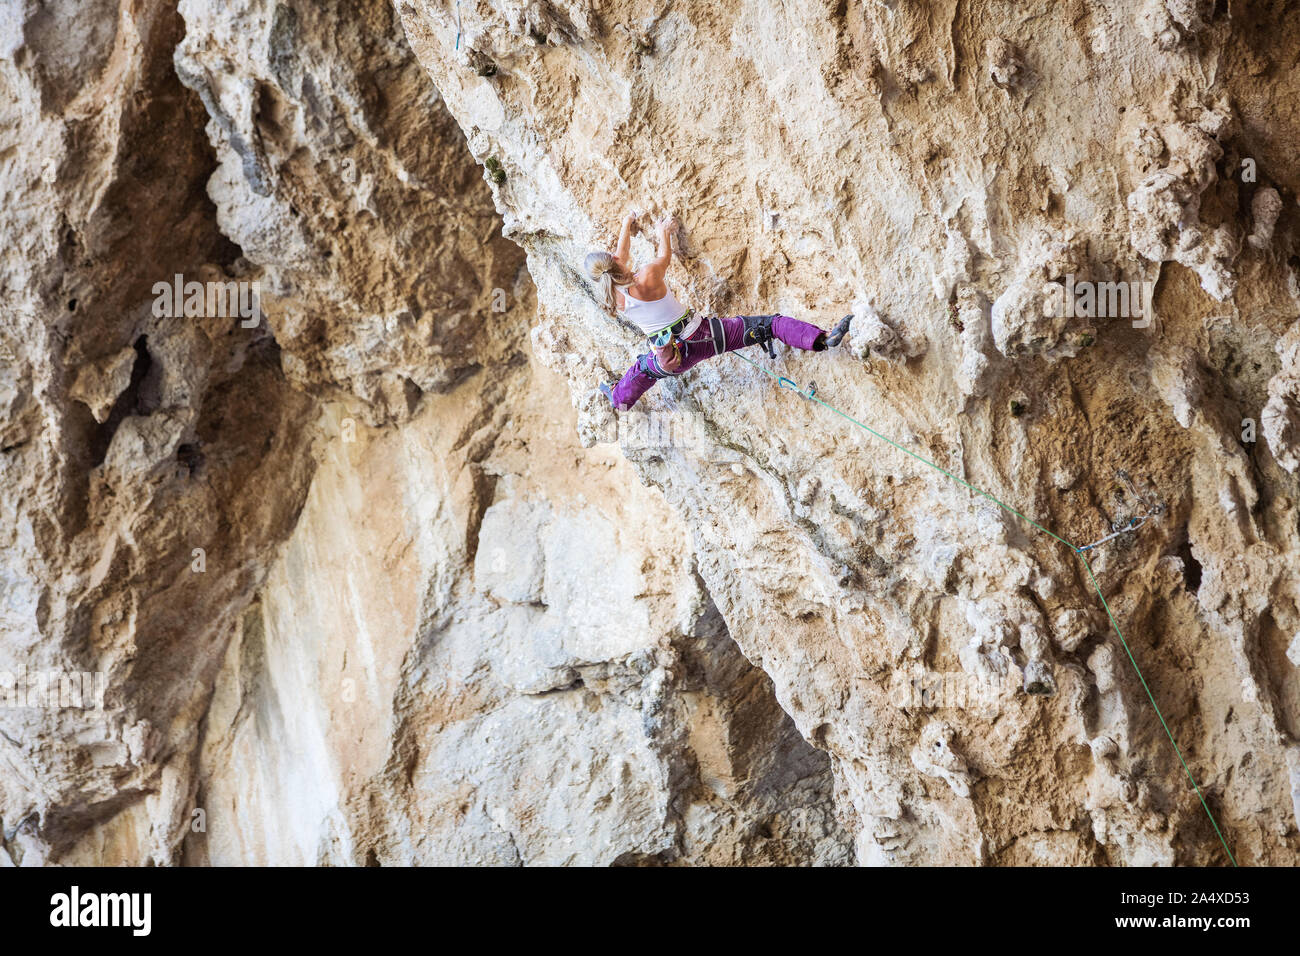 Giovani caucasici donna climbing impegnativo percorso sulla rupe a strapiombo Foto Stock